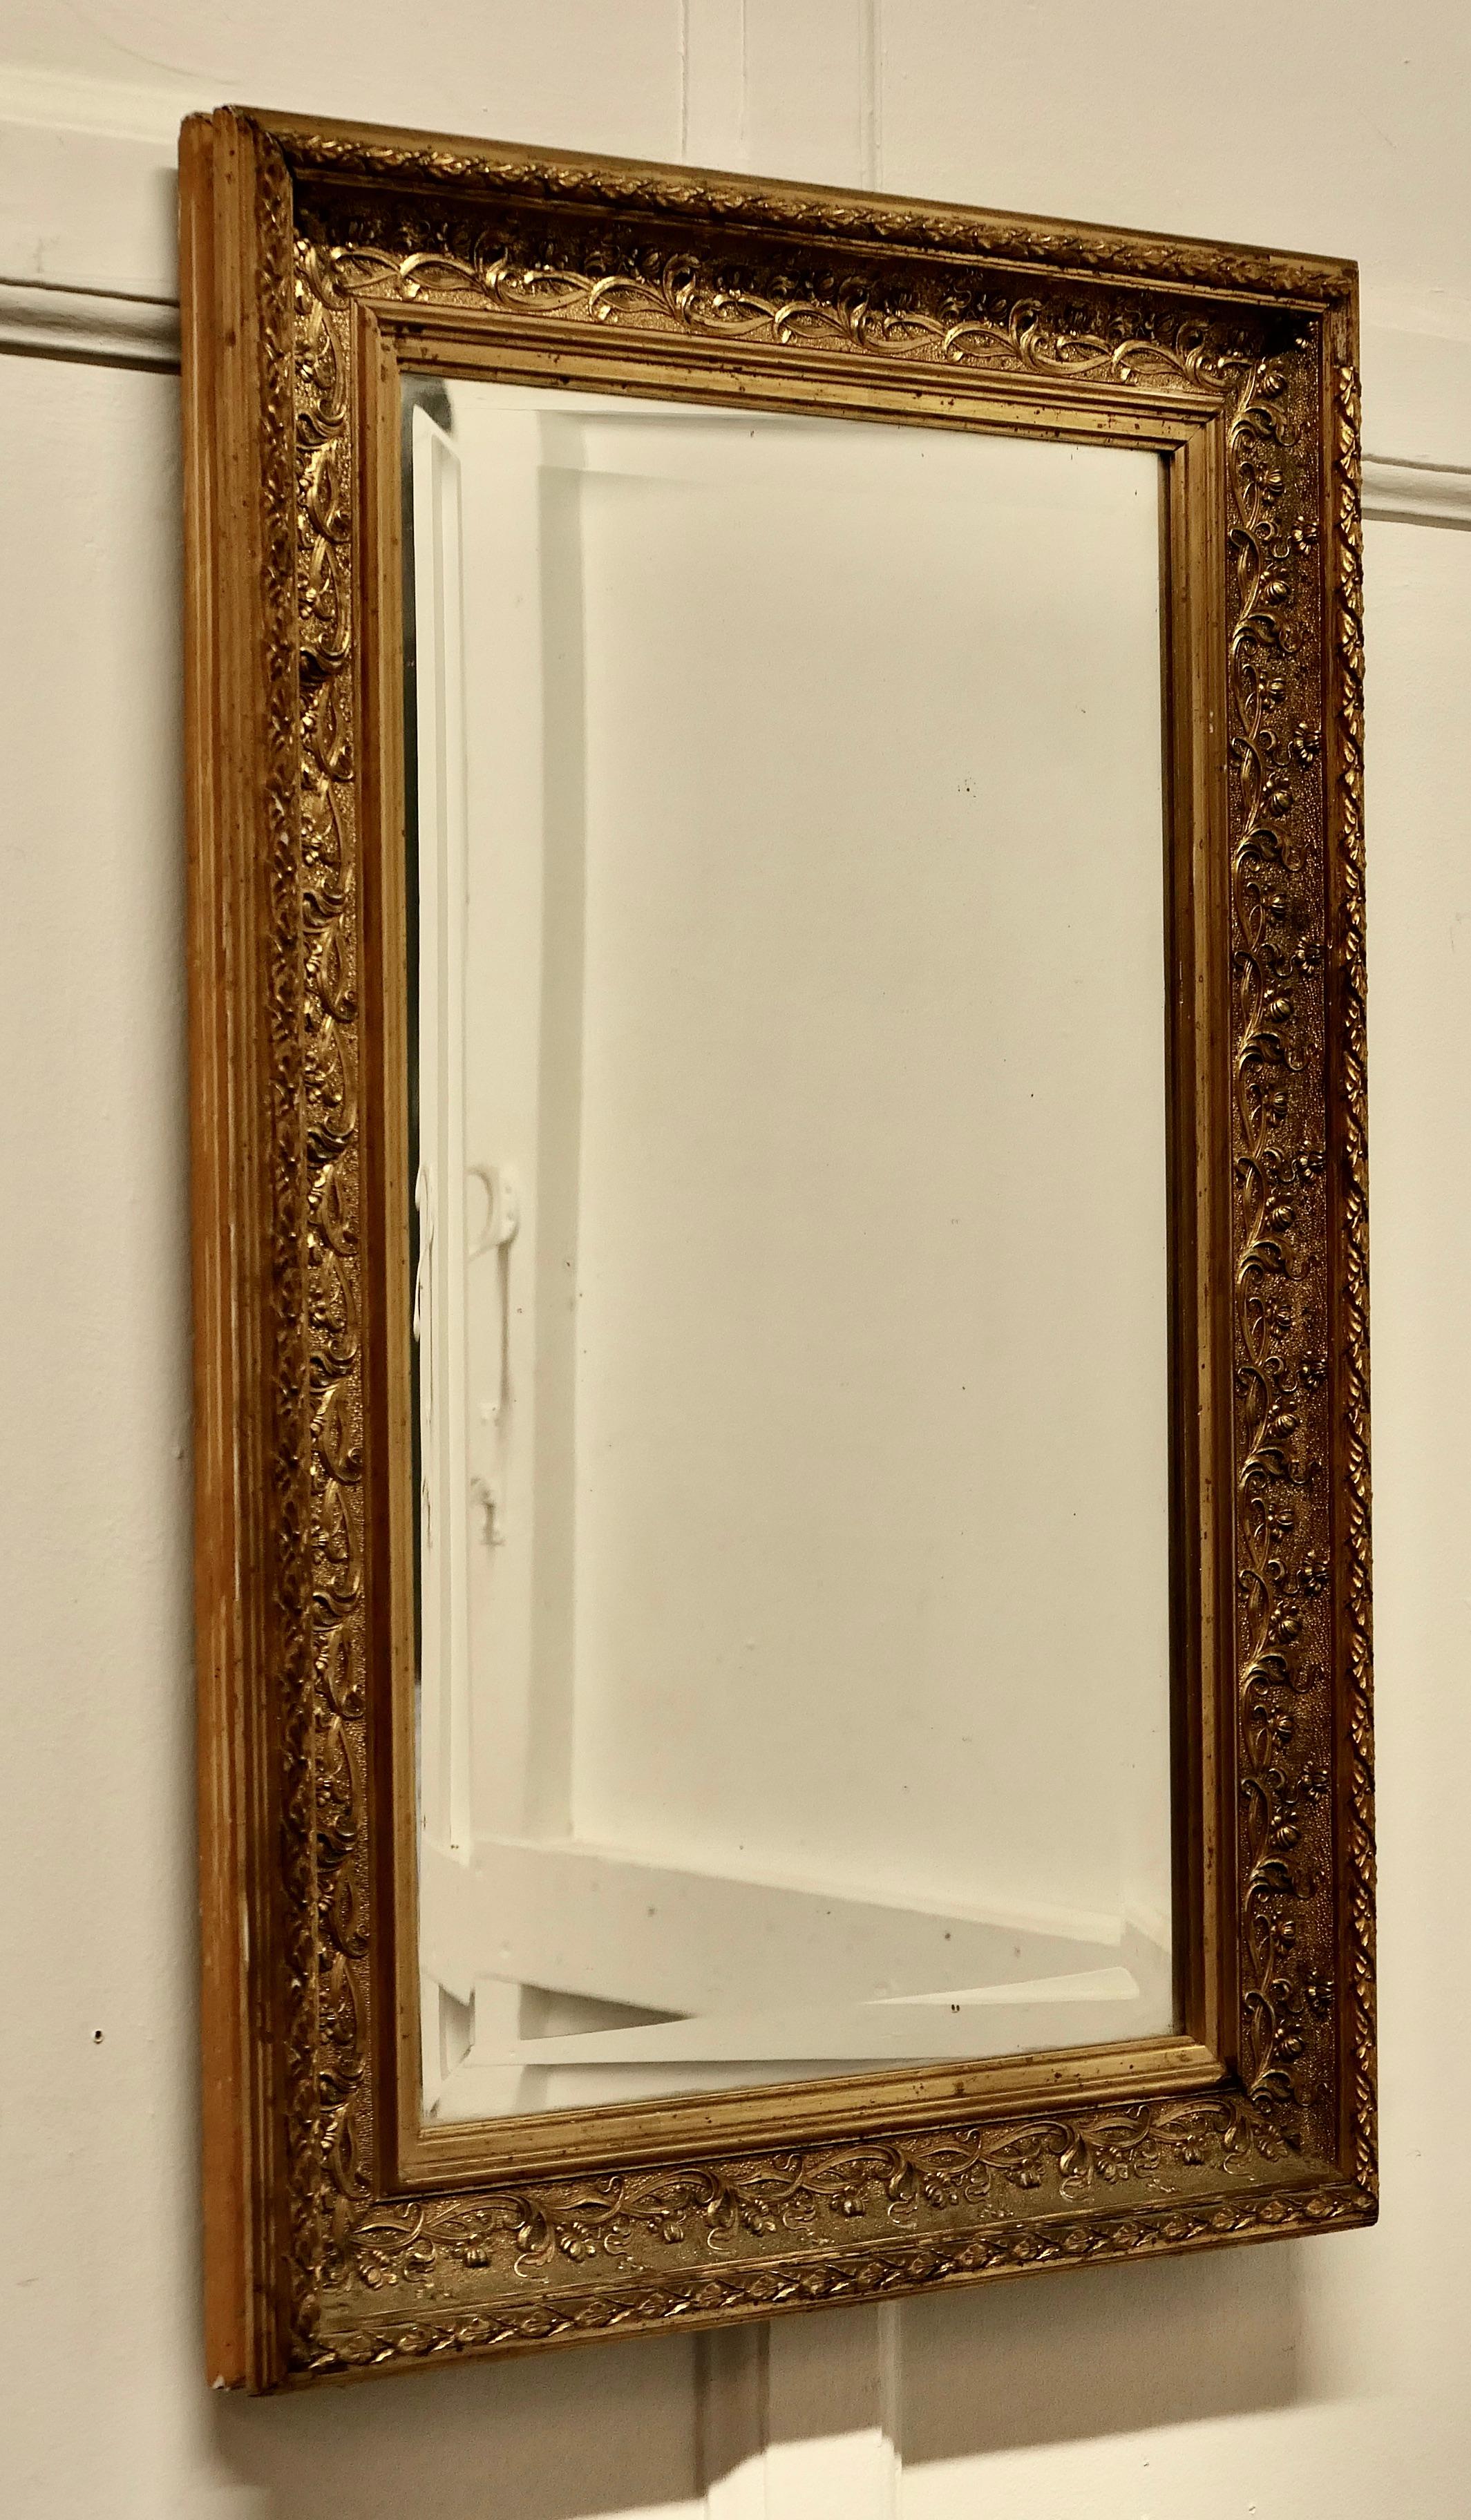 Miroir mural doré du 19ème siècle

Il s'agit d'un beau miroir ancien qui est placé dans un cadre décoratif doré de 3